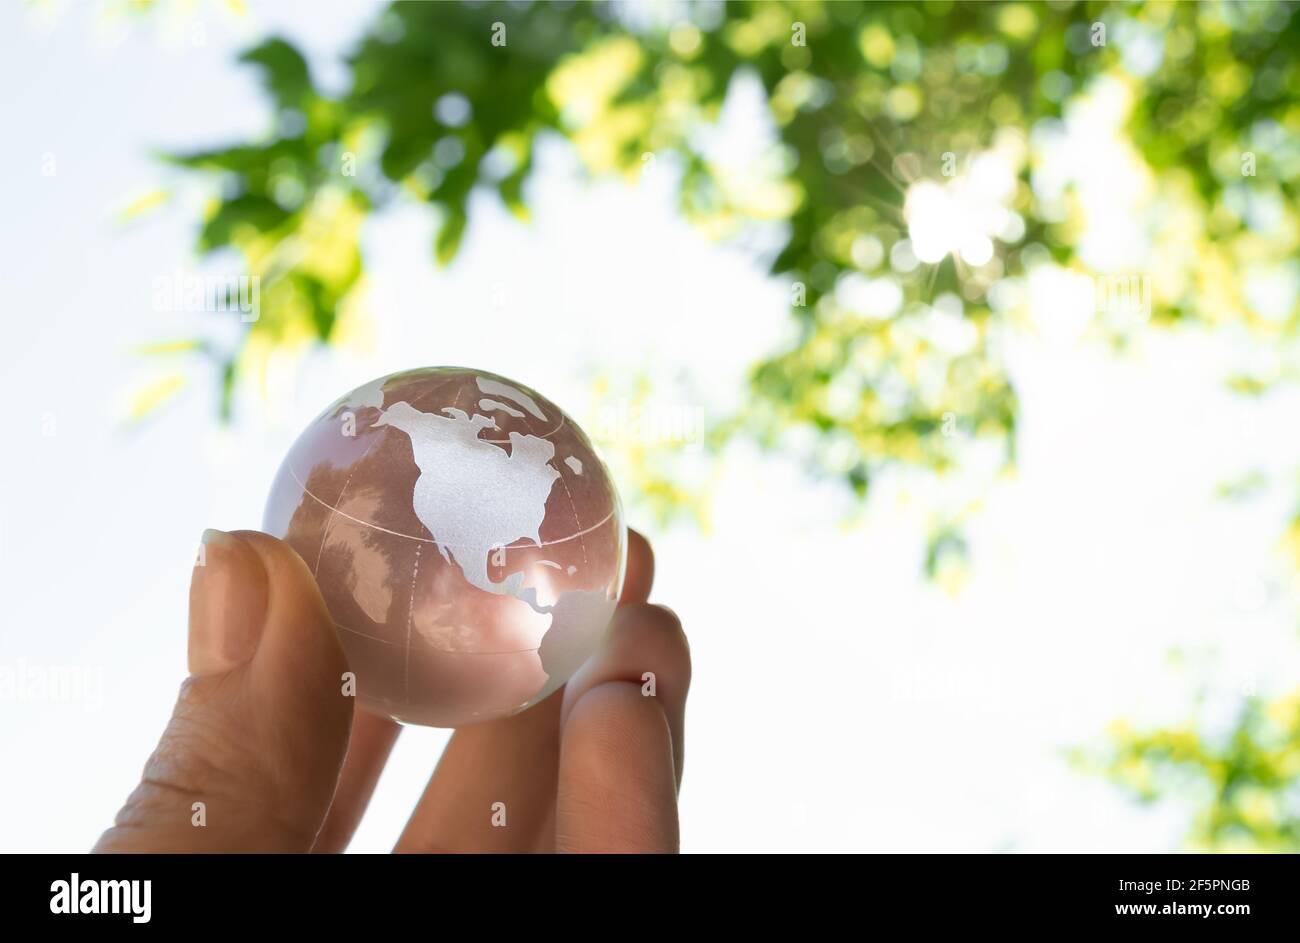 Globe de cristal dans la main d'un homme contre un fond de ciel bleu et de feuillage vert. Concept de protection de la terre. Protection de la nature Banque D'Images